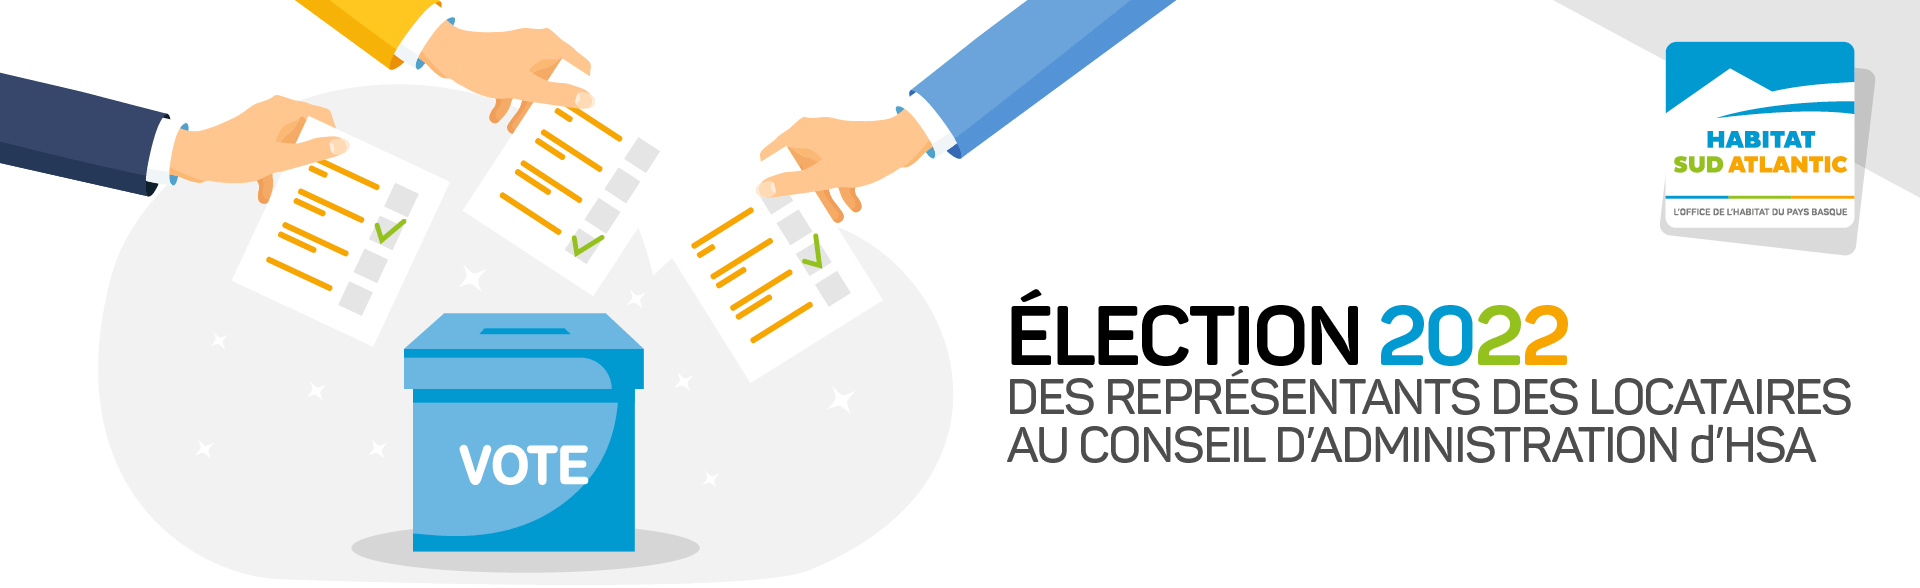 Elections des représentants des locataires 2022